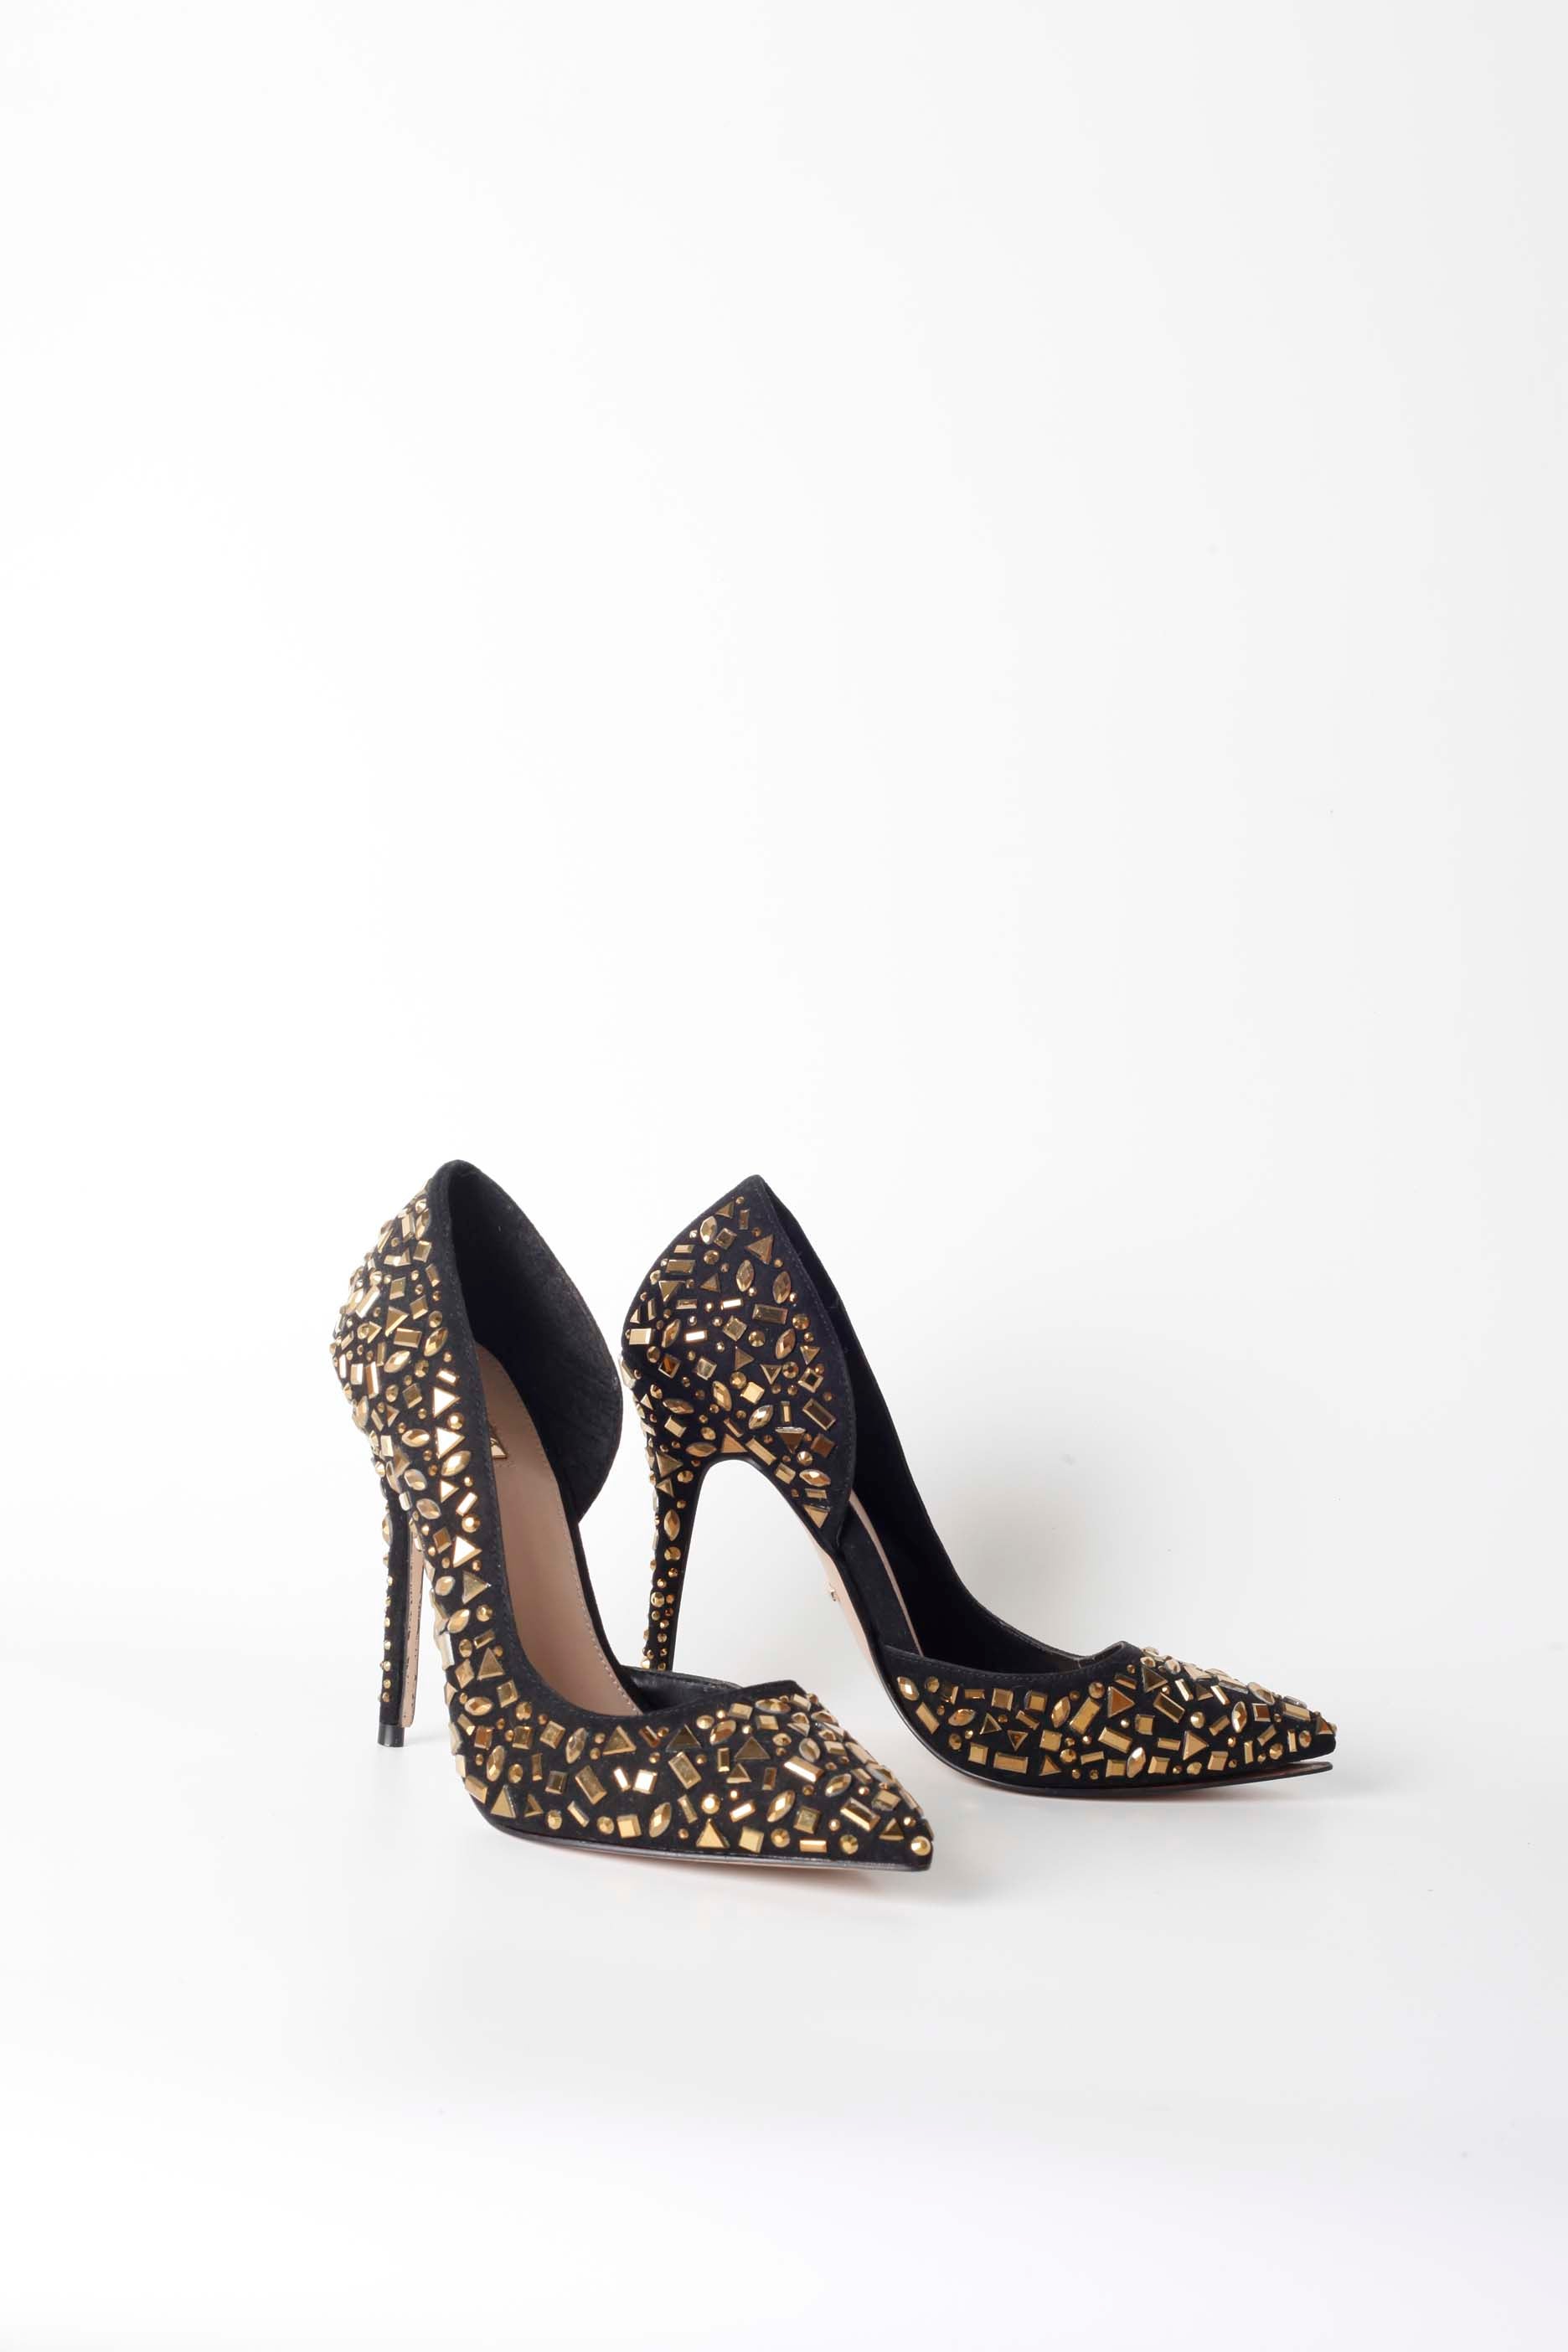 Embellished Black and Gold High Heels